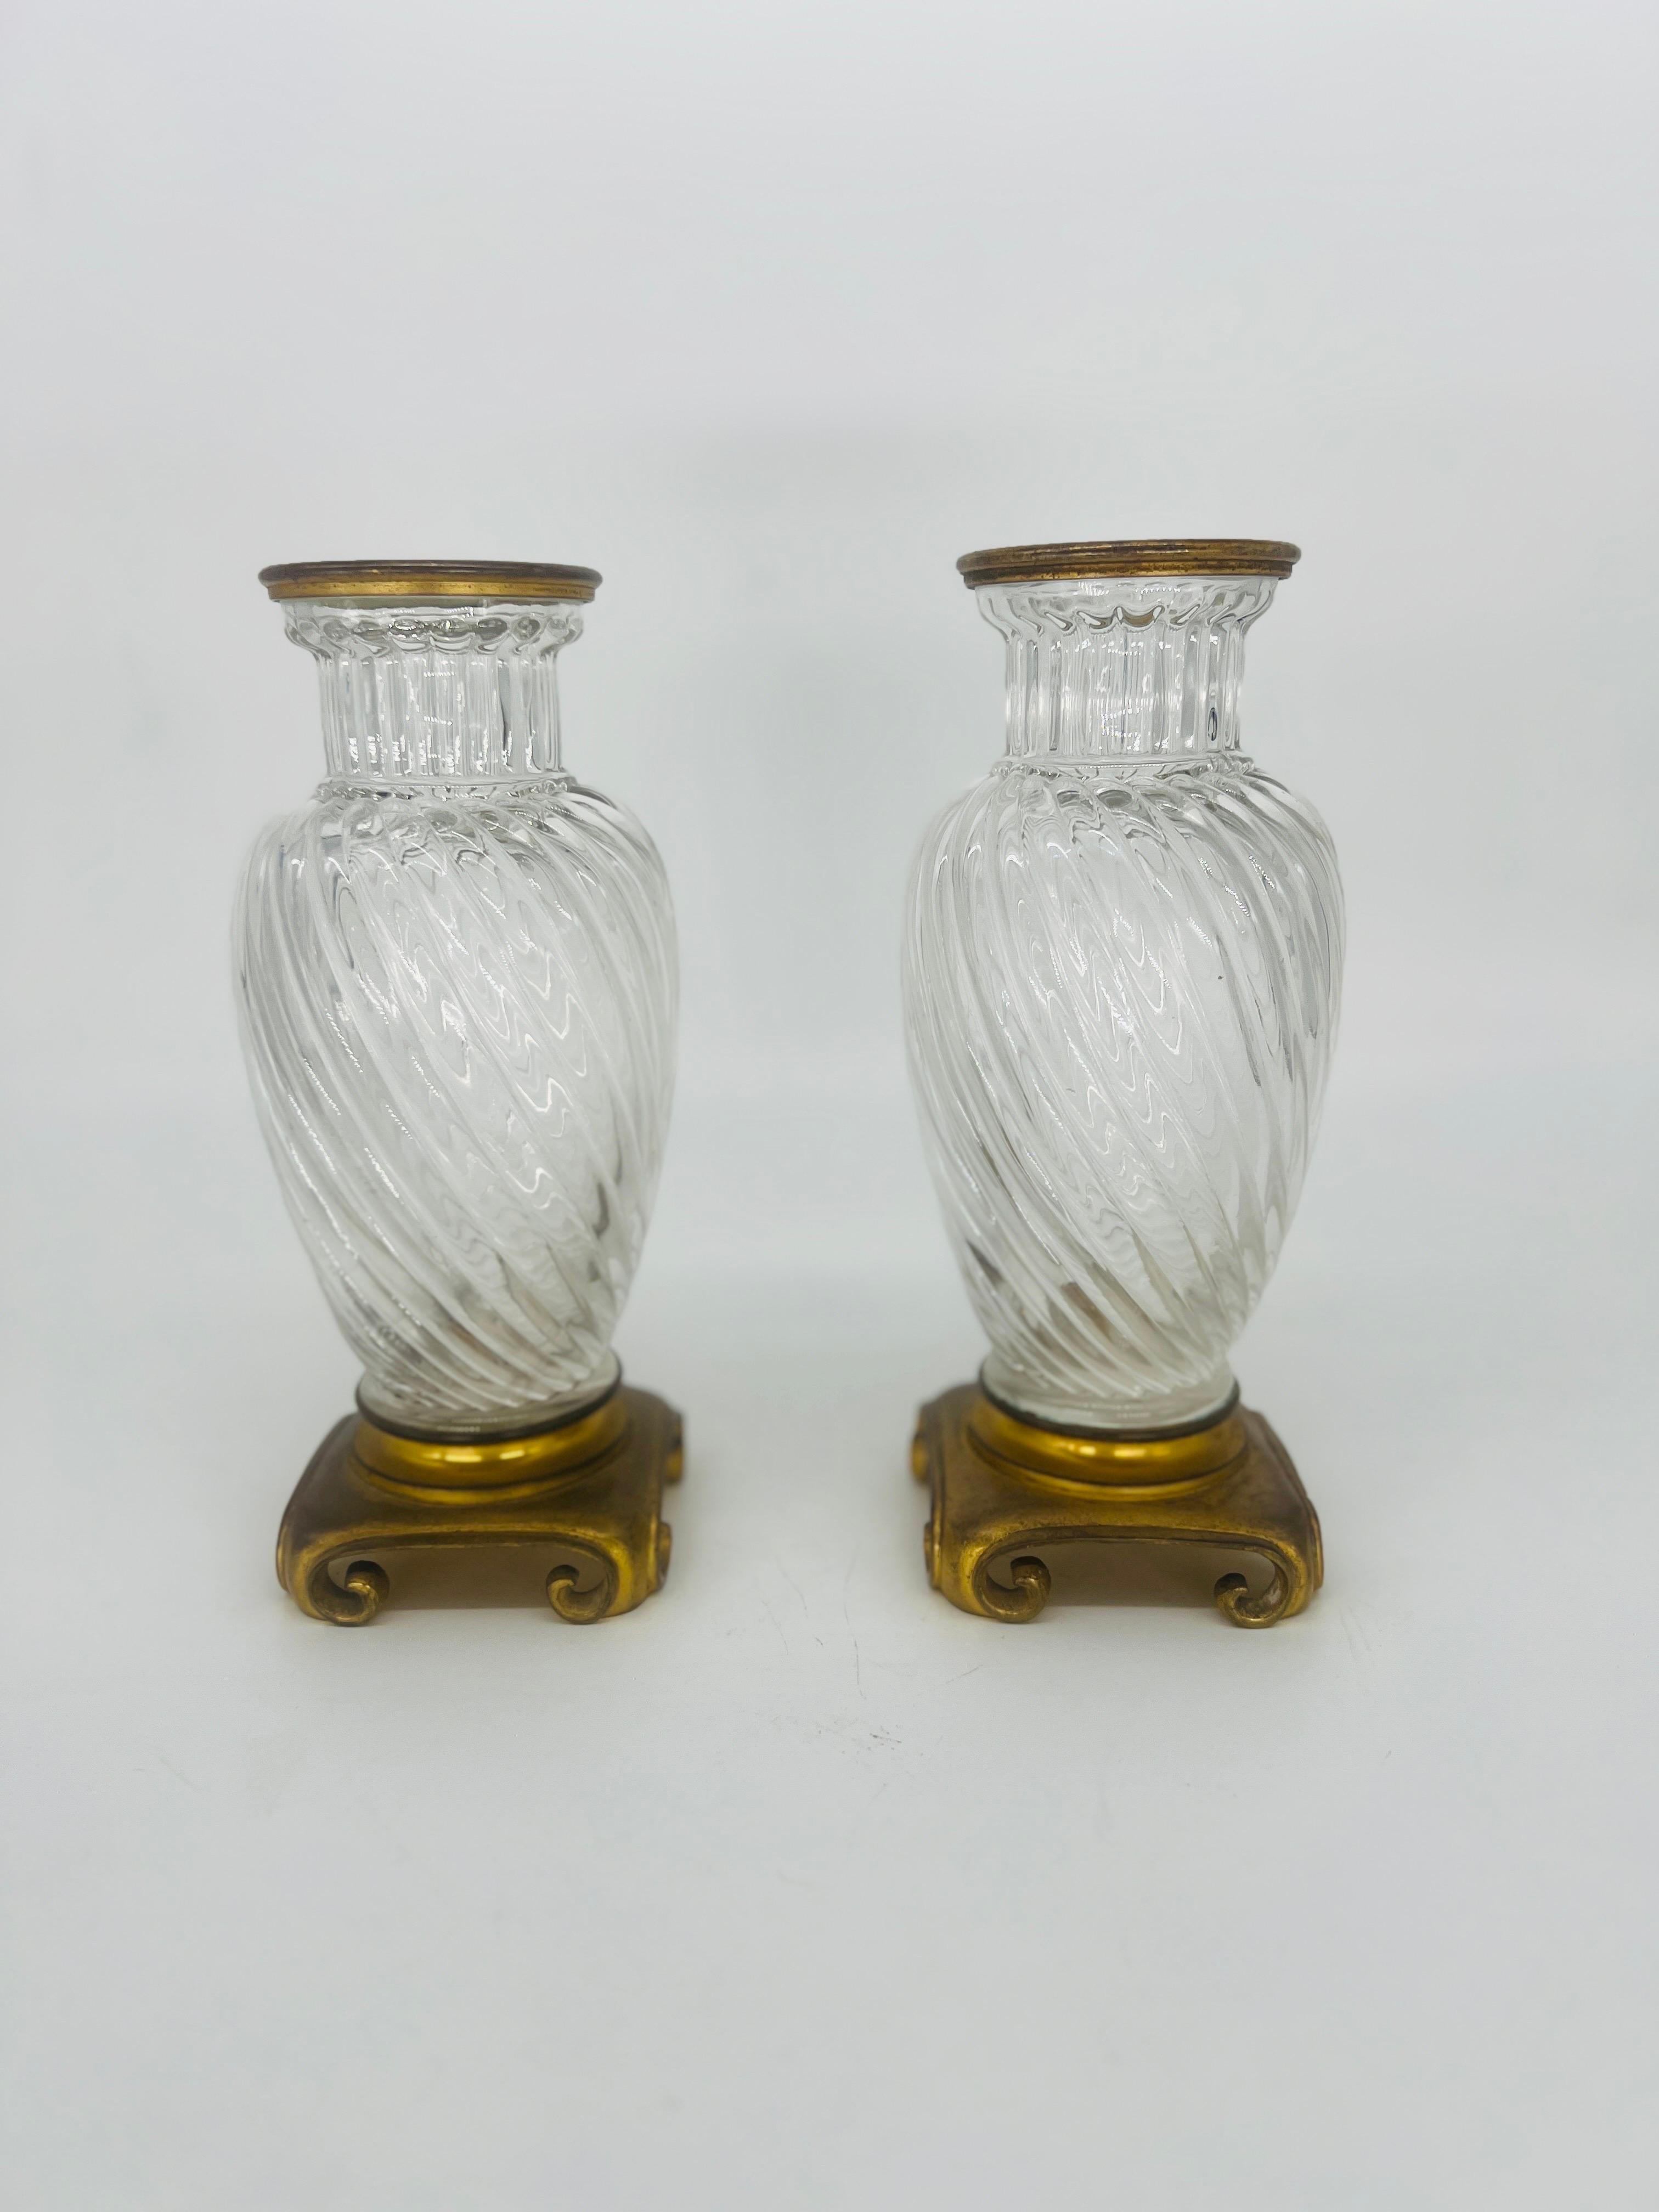 Paar, 19. Jahrhundert Baccarat Swirl Pattern Bronze Ormolu montiert Kristallvasen.
Diese beiden französischen Kristallvasen aus dem 19. Jahrhundert haben das ikonische Baccarat-Wirbelmuster auf dem Korpus, Bronze- oder Ormolu-Beschläge am Rand und